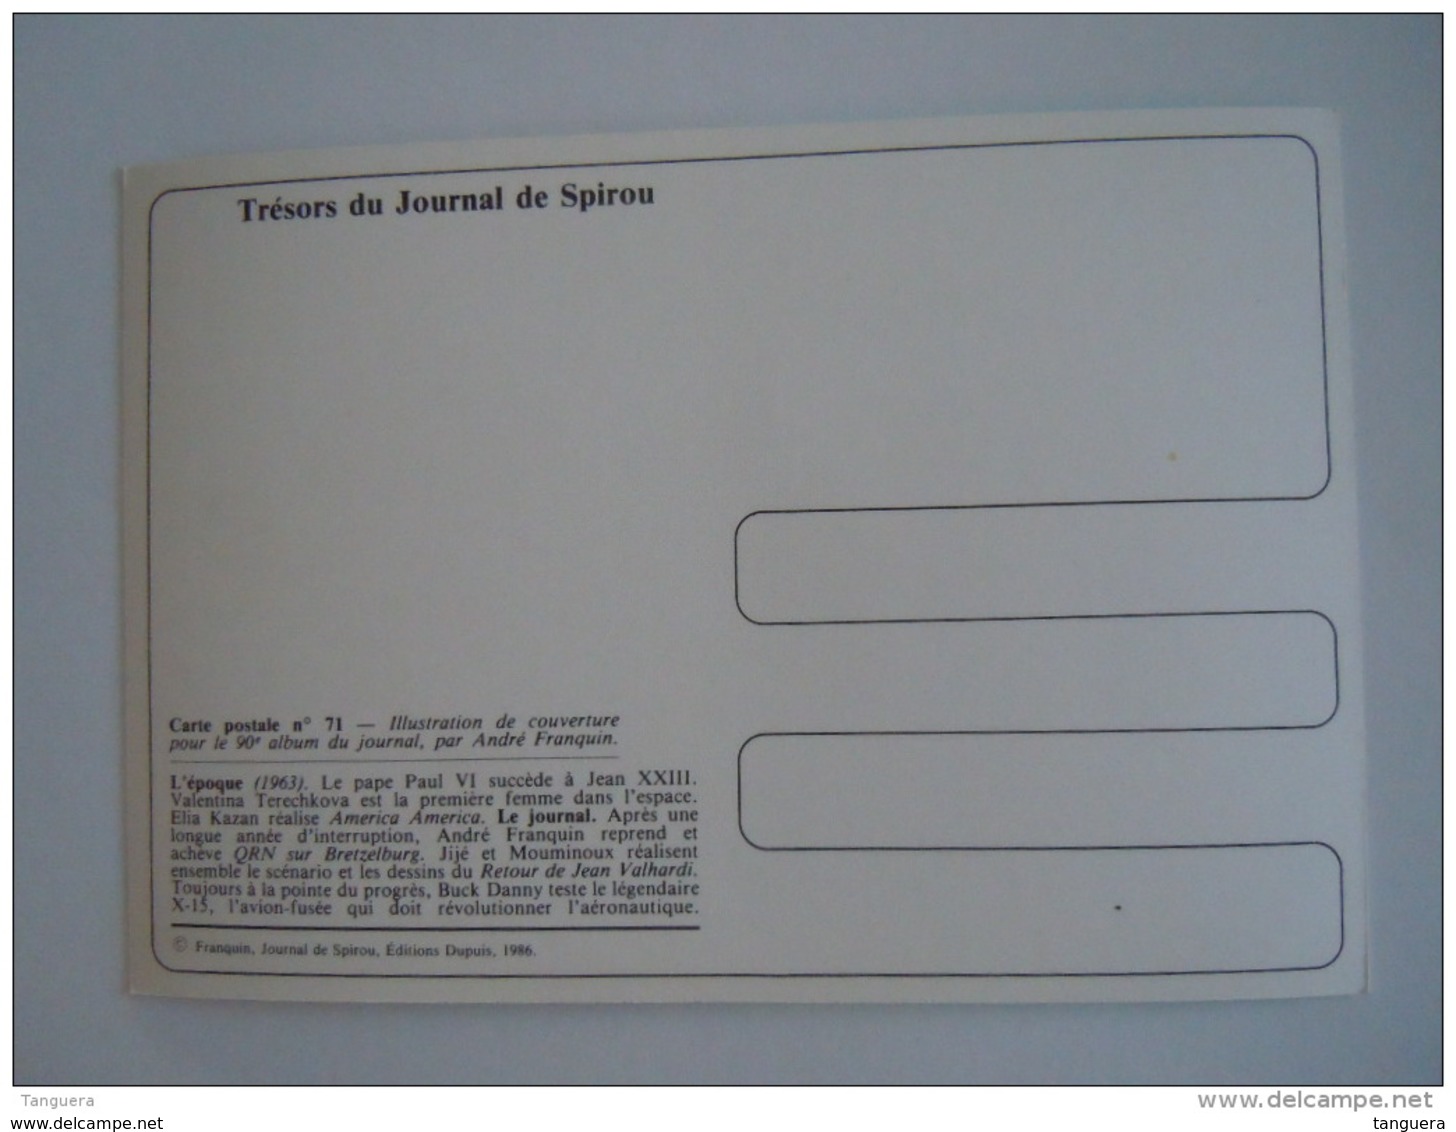 1986 Trésors Du Journal De Spirou Carte Postale 71 Illustration  Couverture Pour Le 90é Album Du Journal André Franquin - Comicfiguren